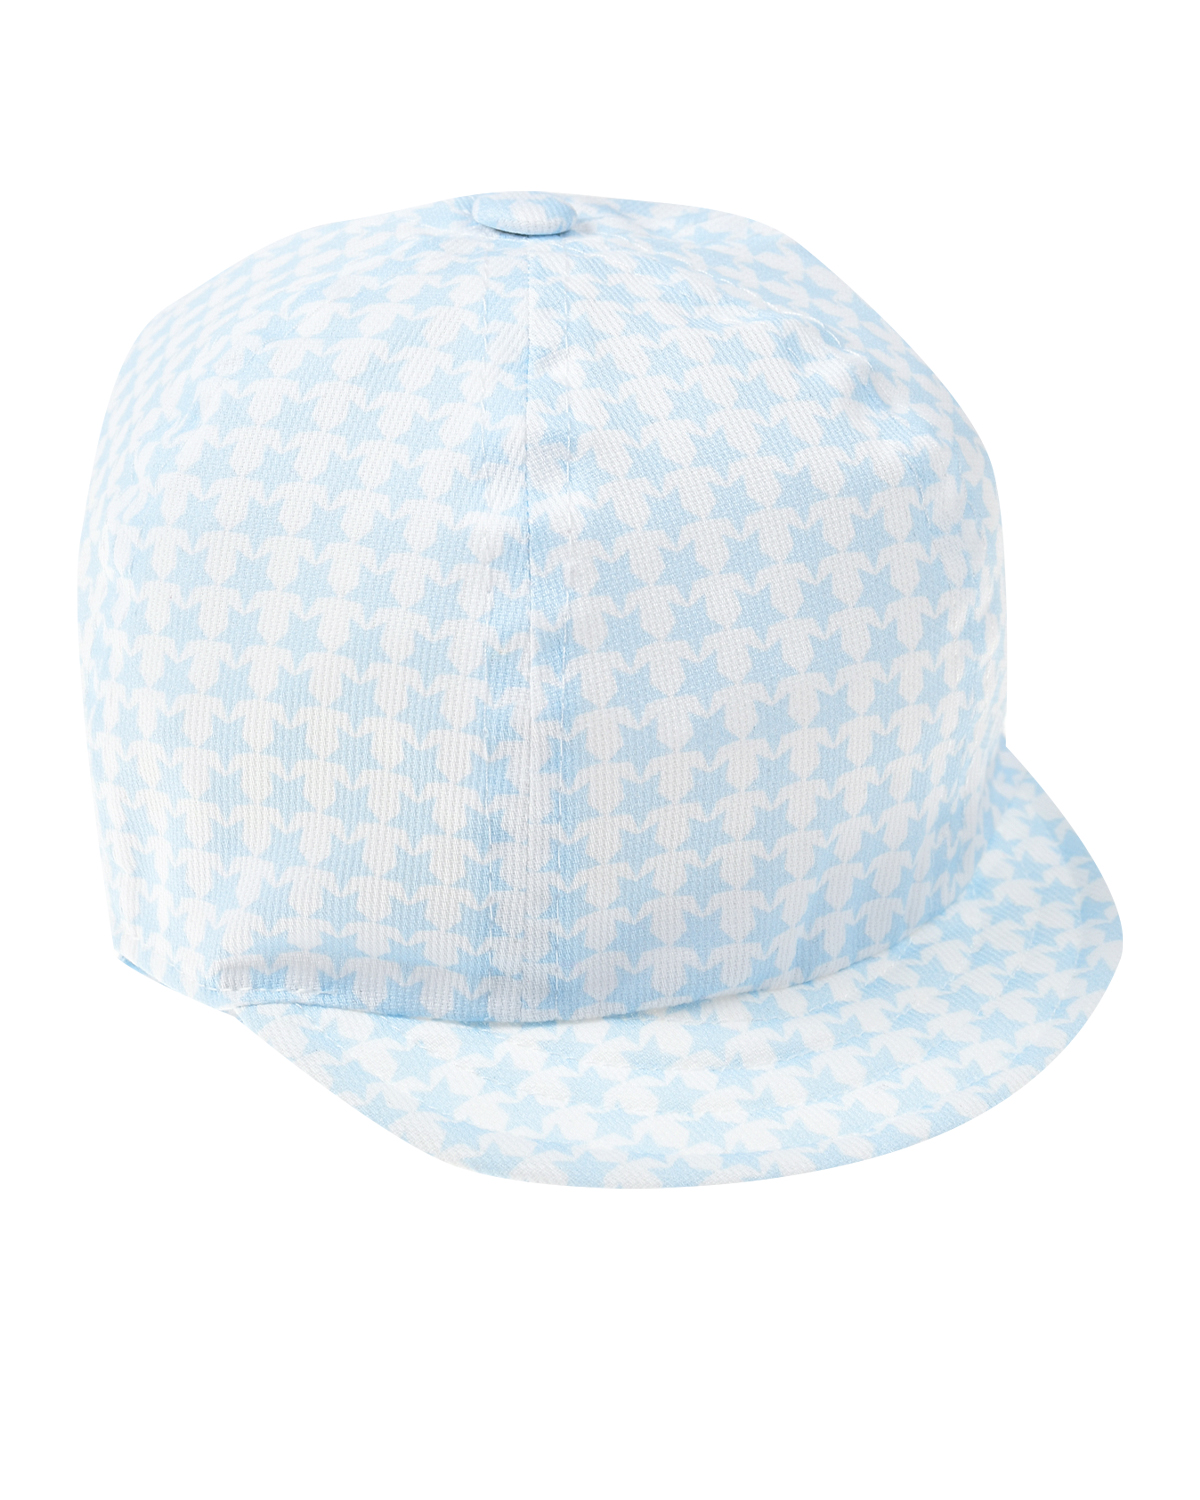 Голубая кепка с принтом "в звездочку" Catya, размер 50, цвет голубой - фото 1